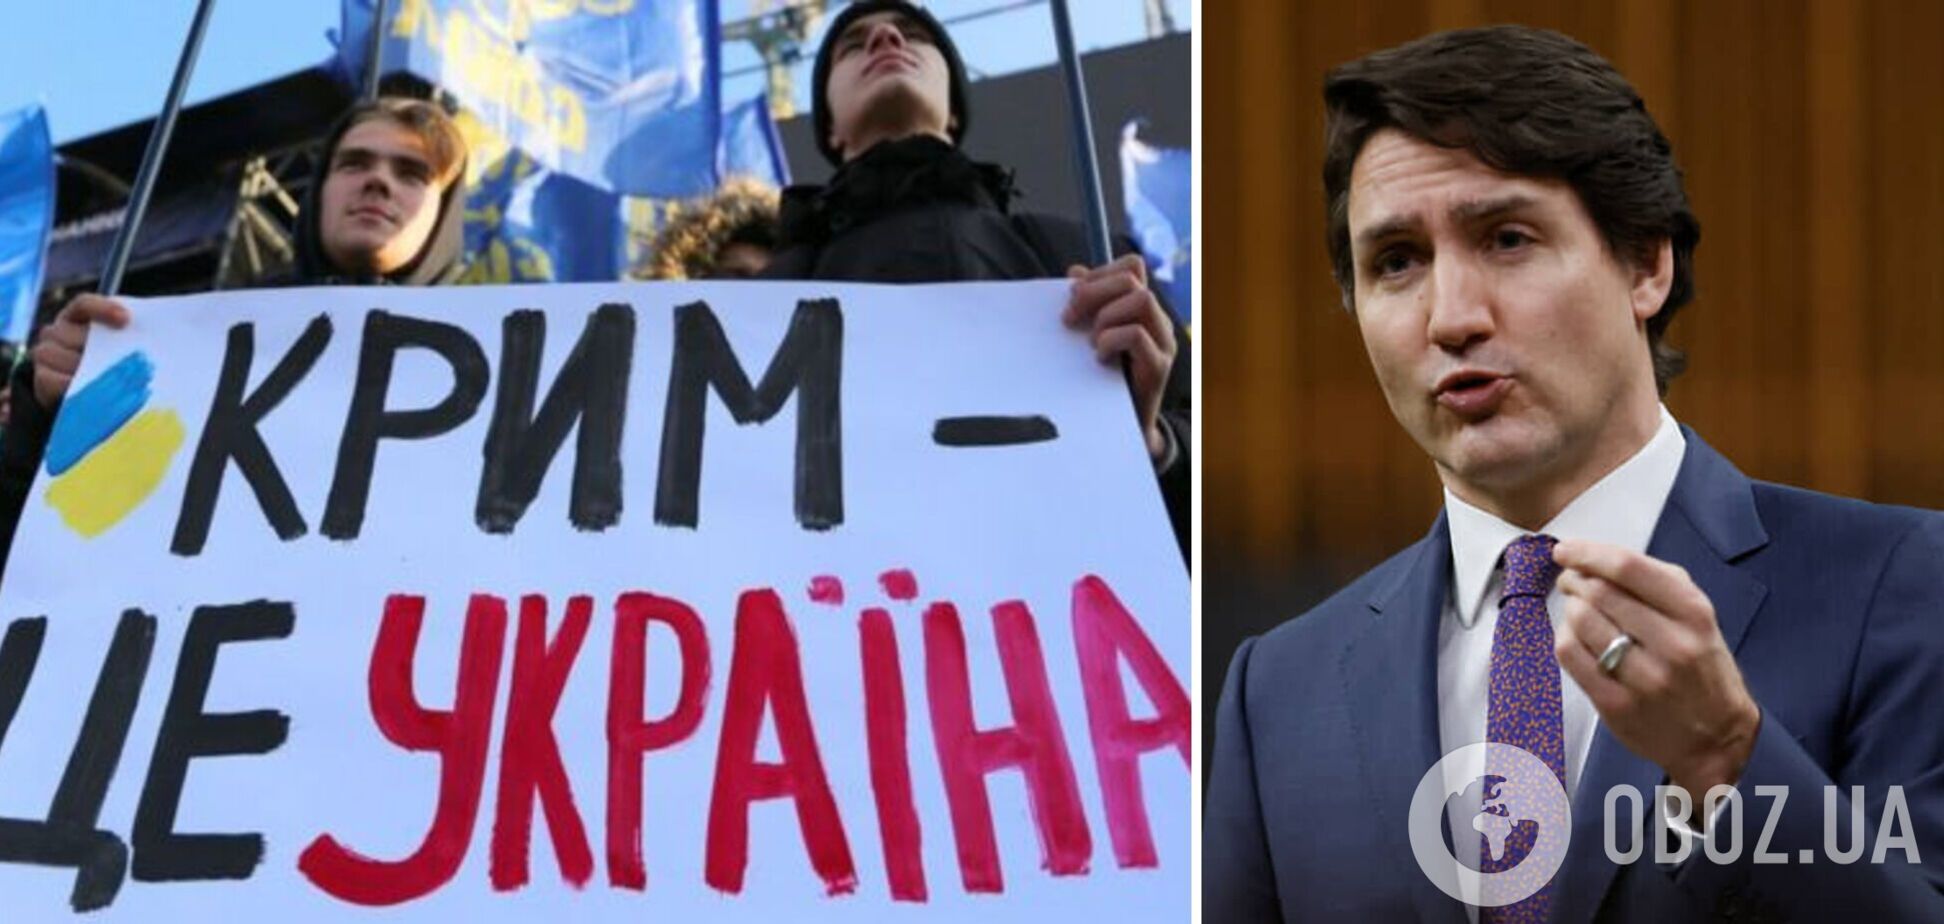 Крым есть и всегда будет Украиной, – Трюдо